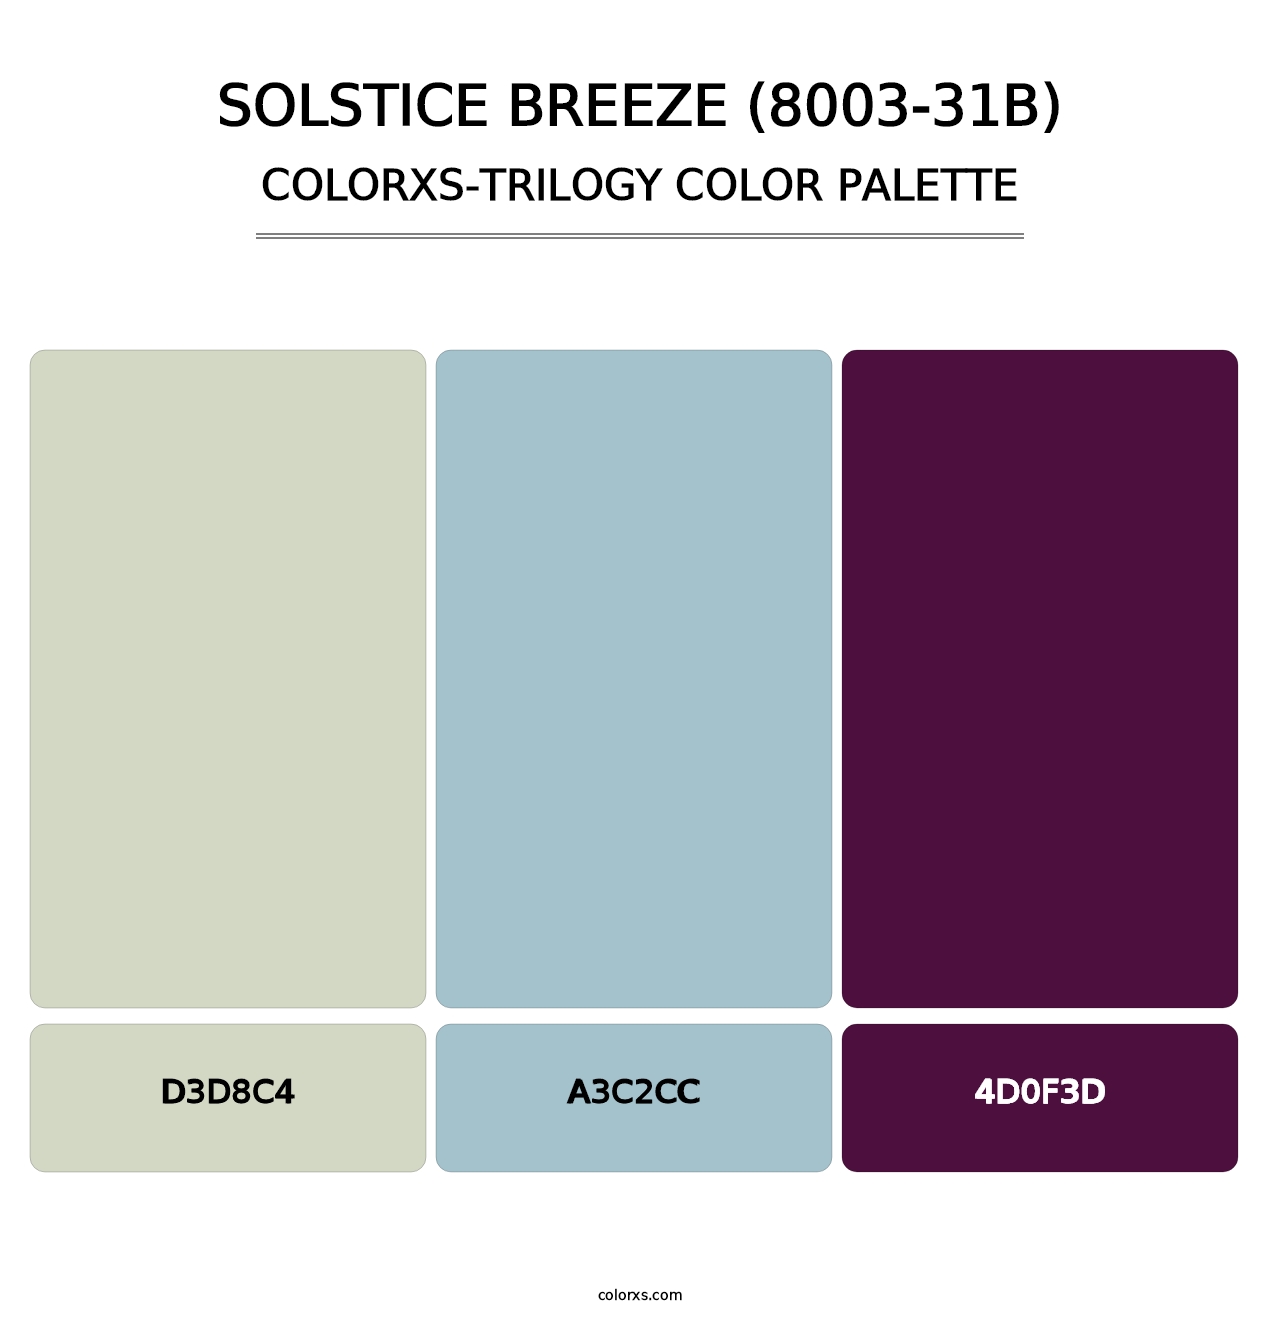 Solstice Breeze (8003-31B) - Colorxs Trilogy Palette